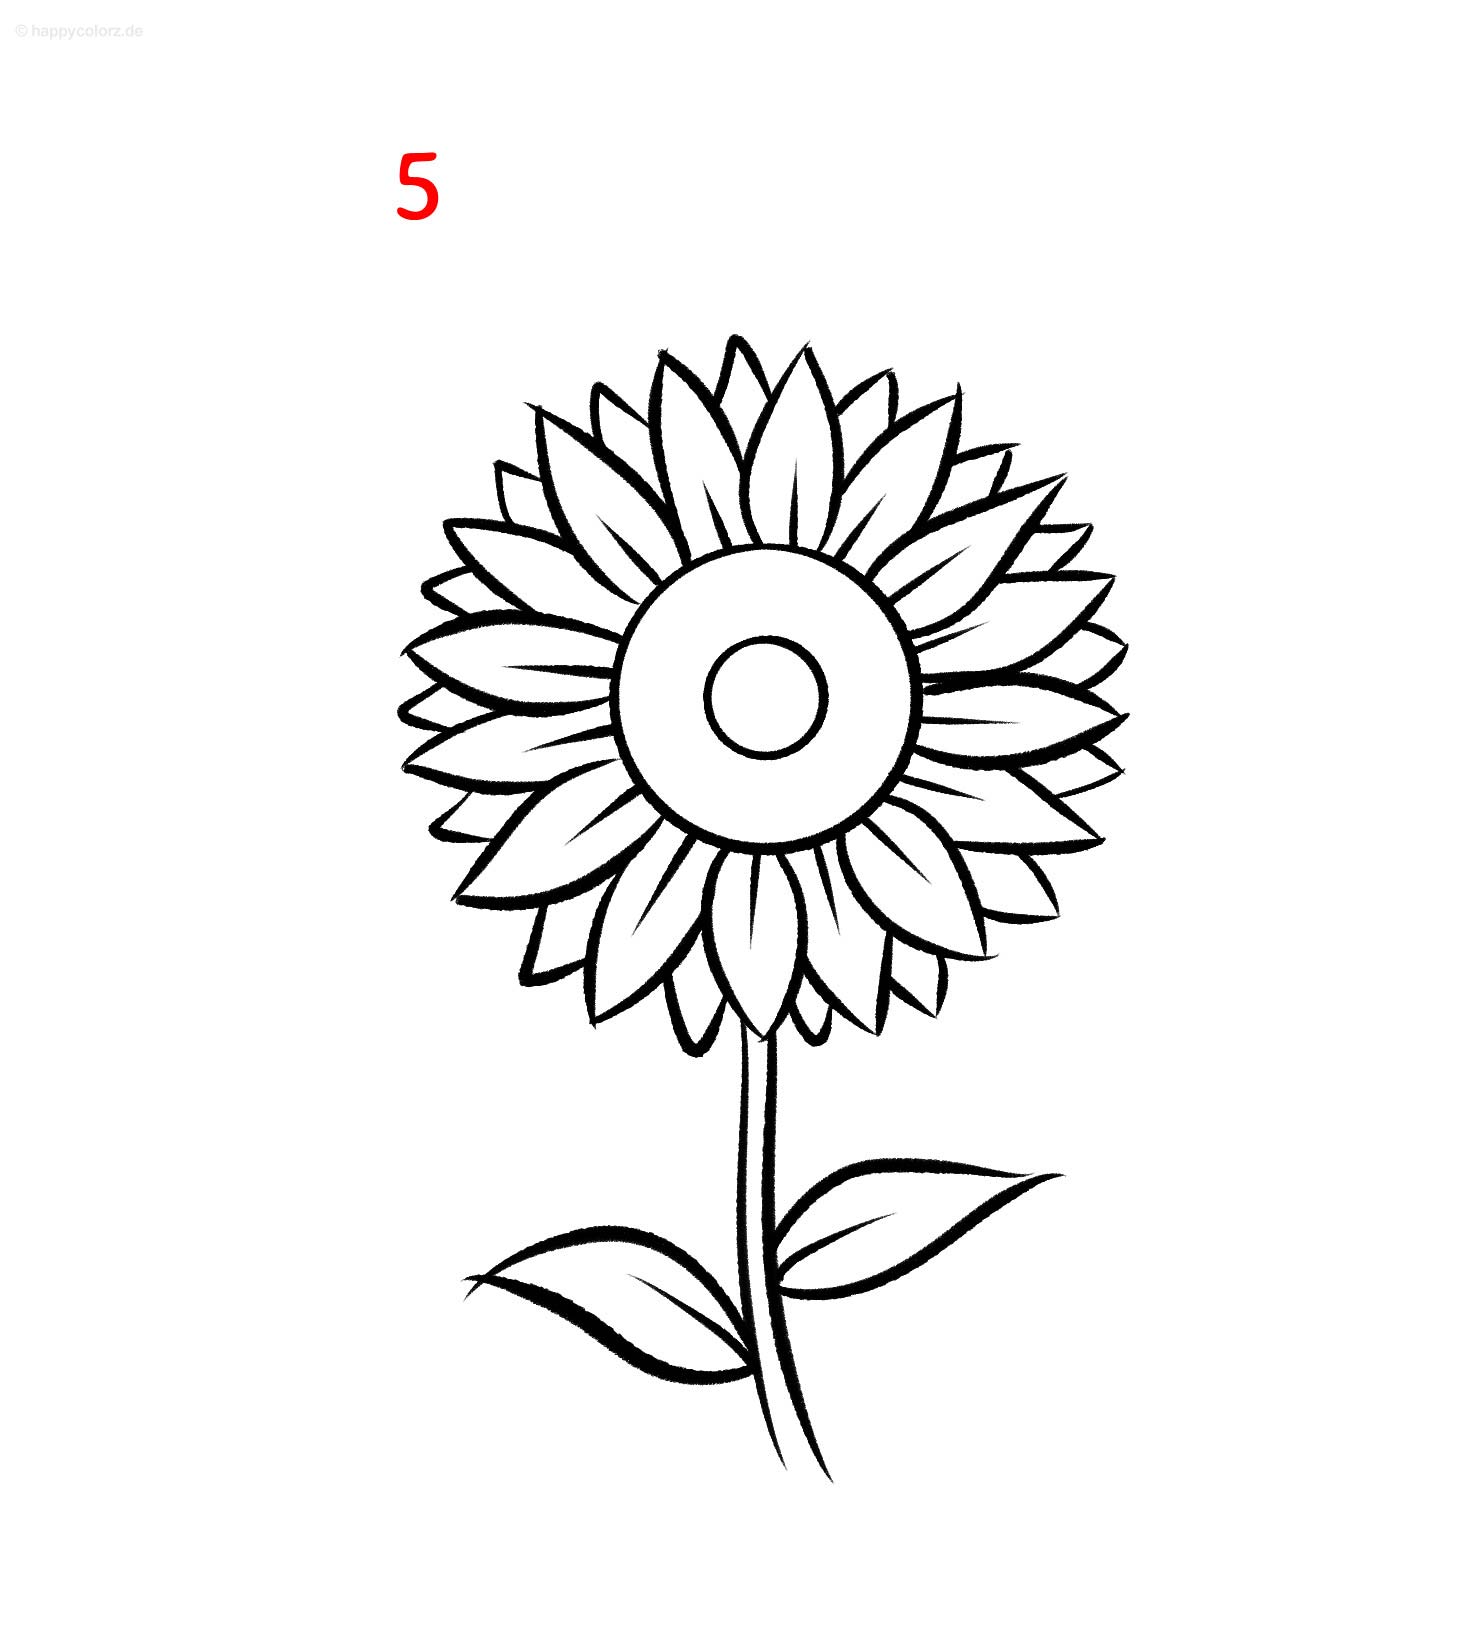 Sonnenblume zeichnen - Schritt für Schritt